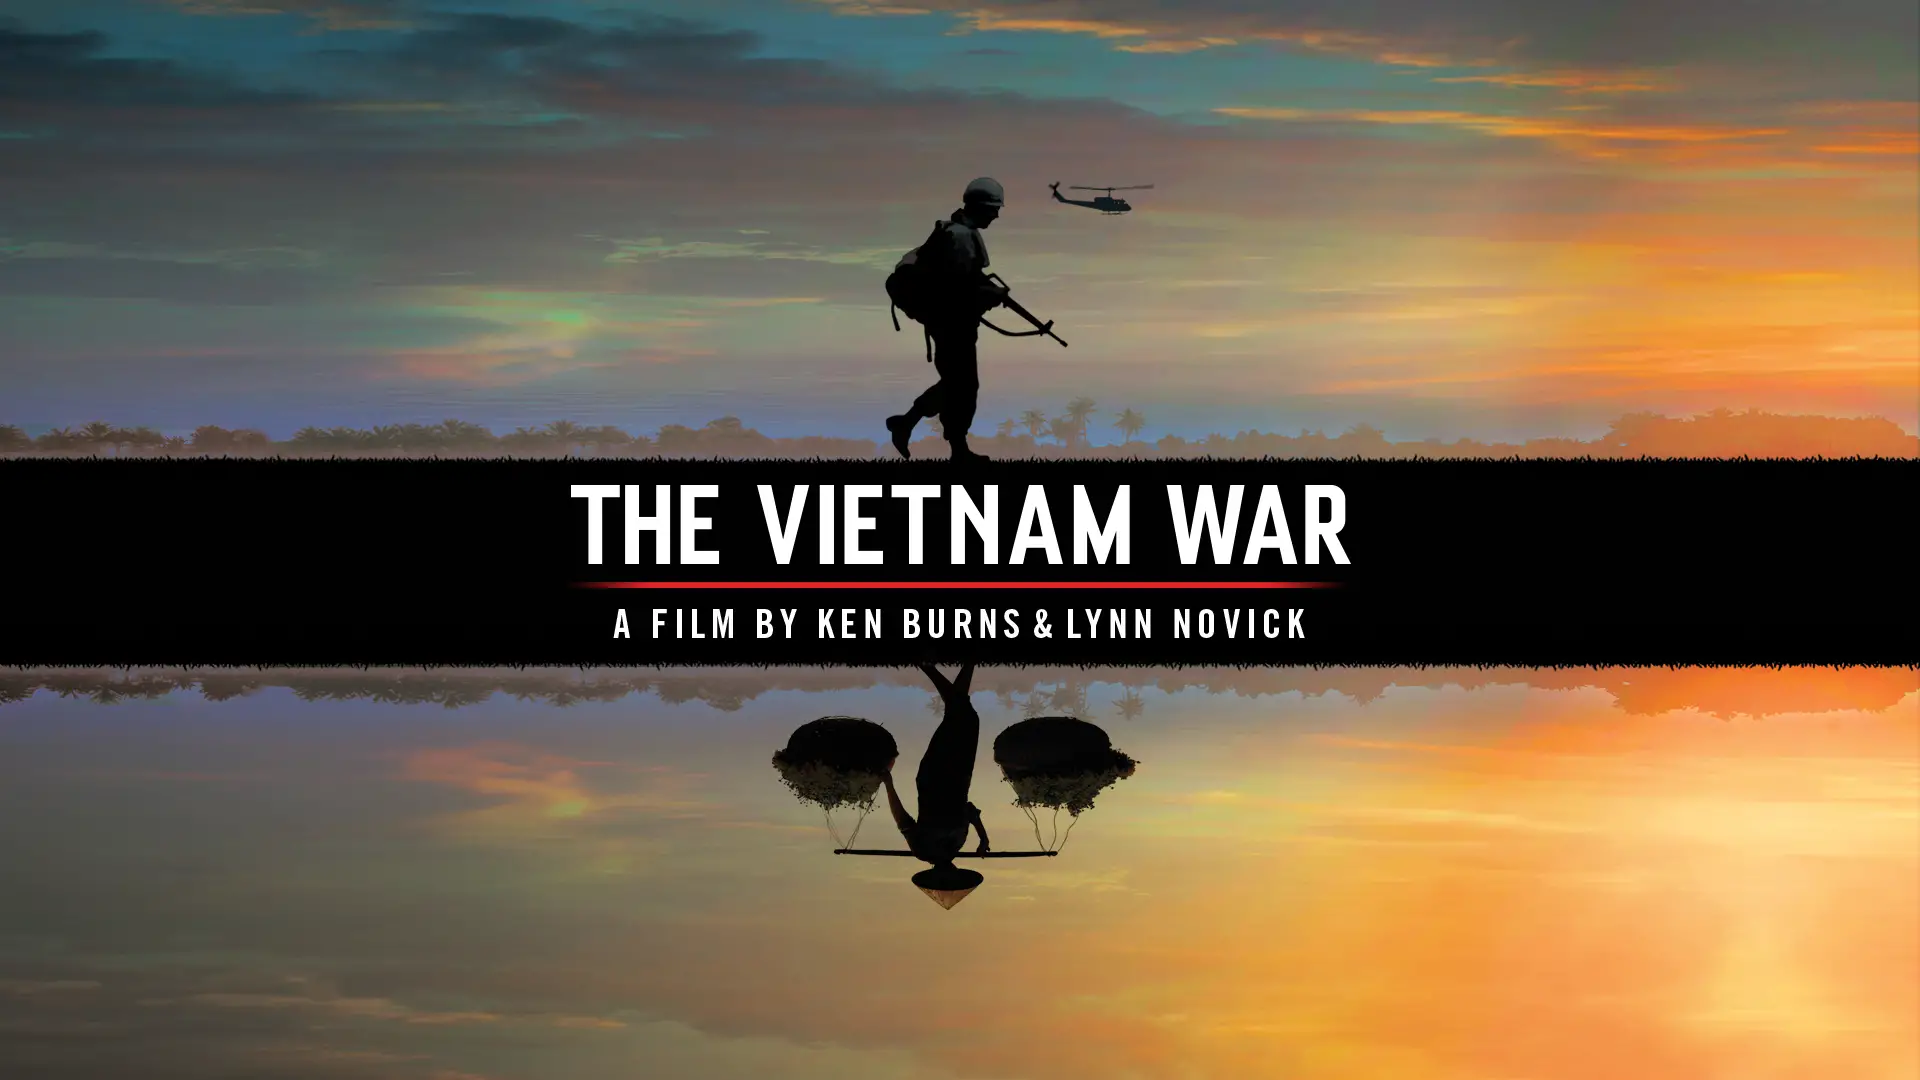 Ken Burns + Trent Reznor + Vietnam War = New Soundtrack Album - Alan Cross